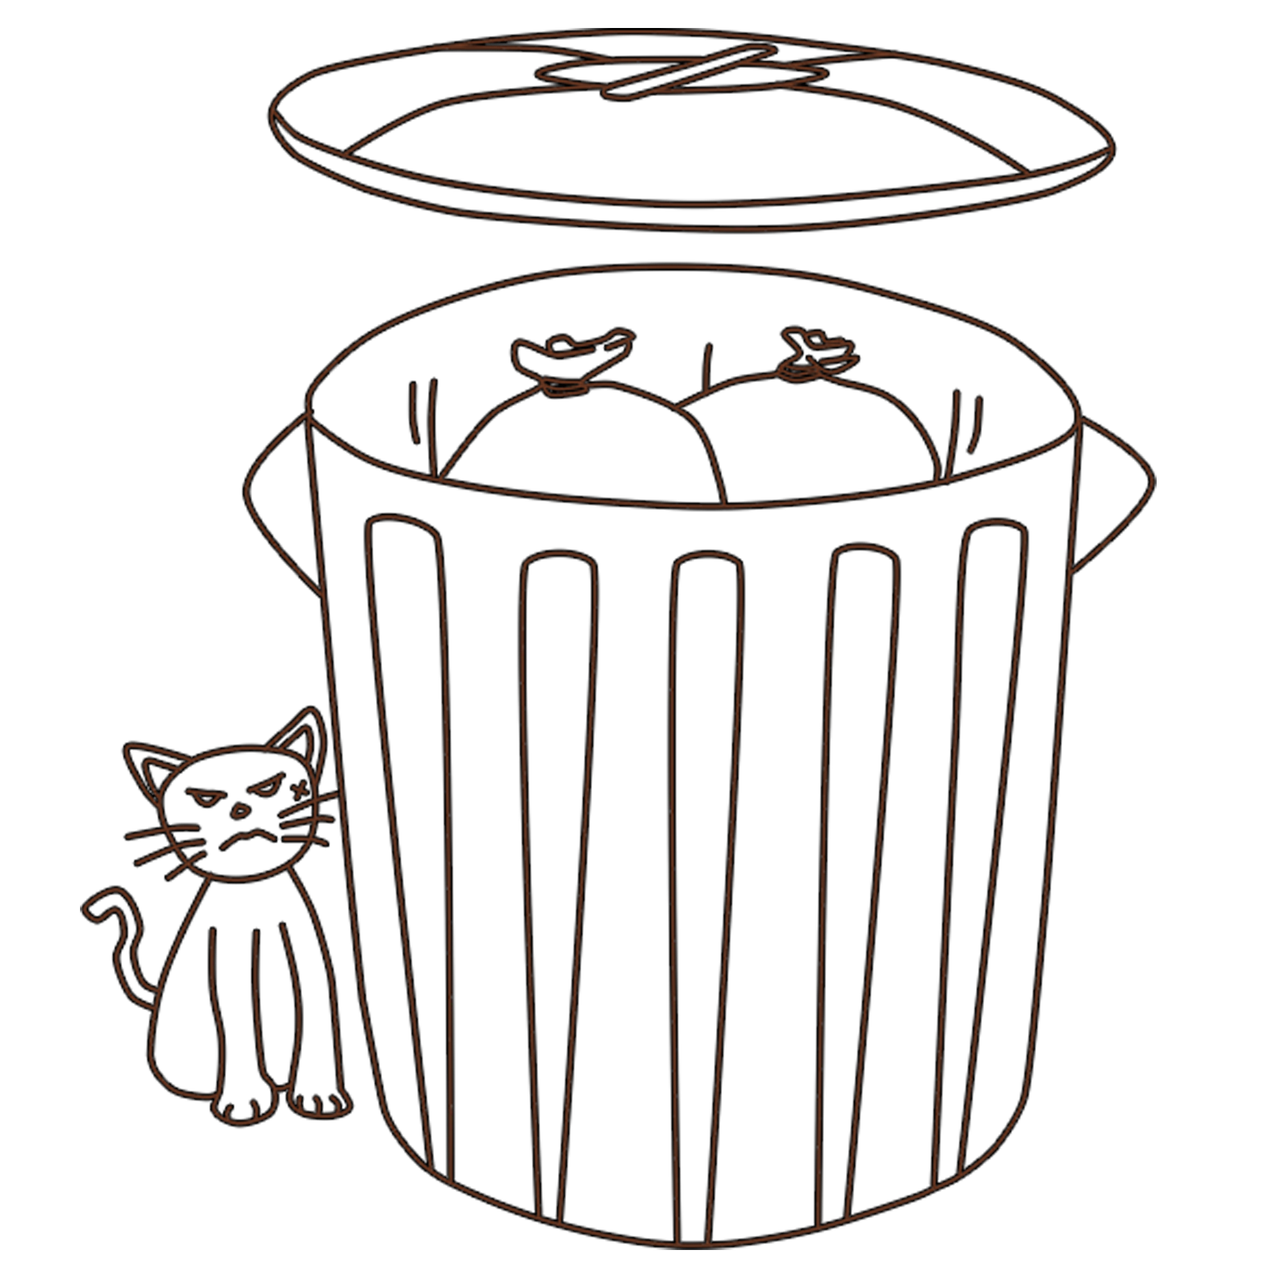 cat trashcan garbage free photo